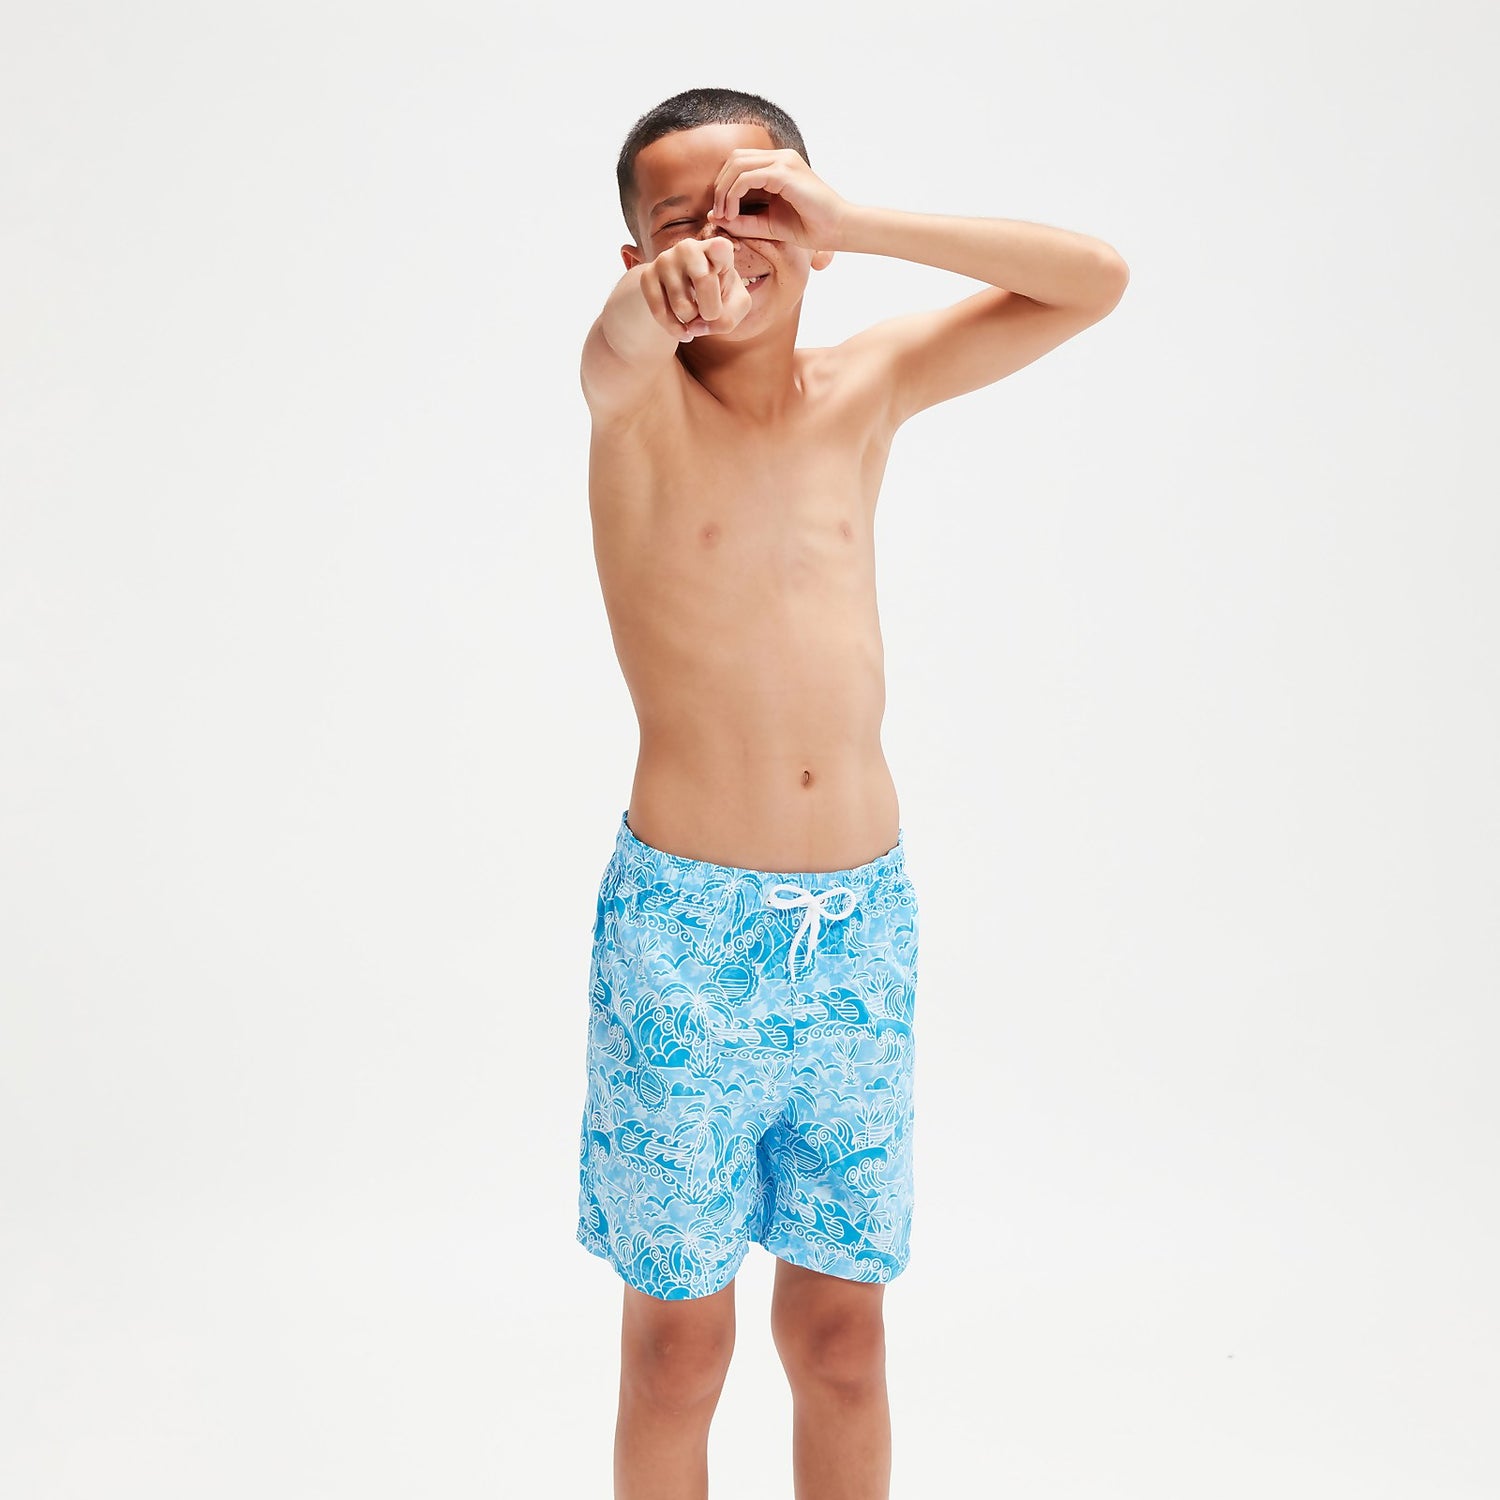 Bedruckte 38 cm Schwimmshorts für Jungen Blau/Weiß | Speedo DE